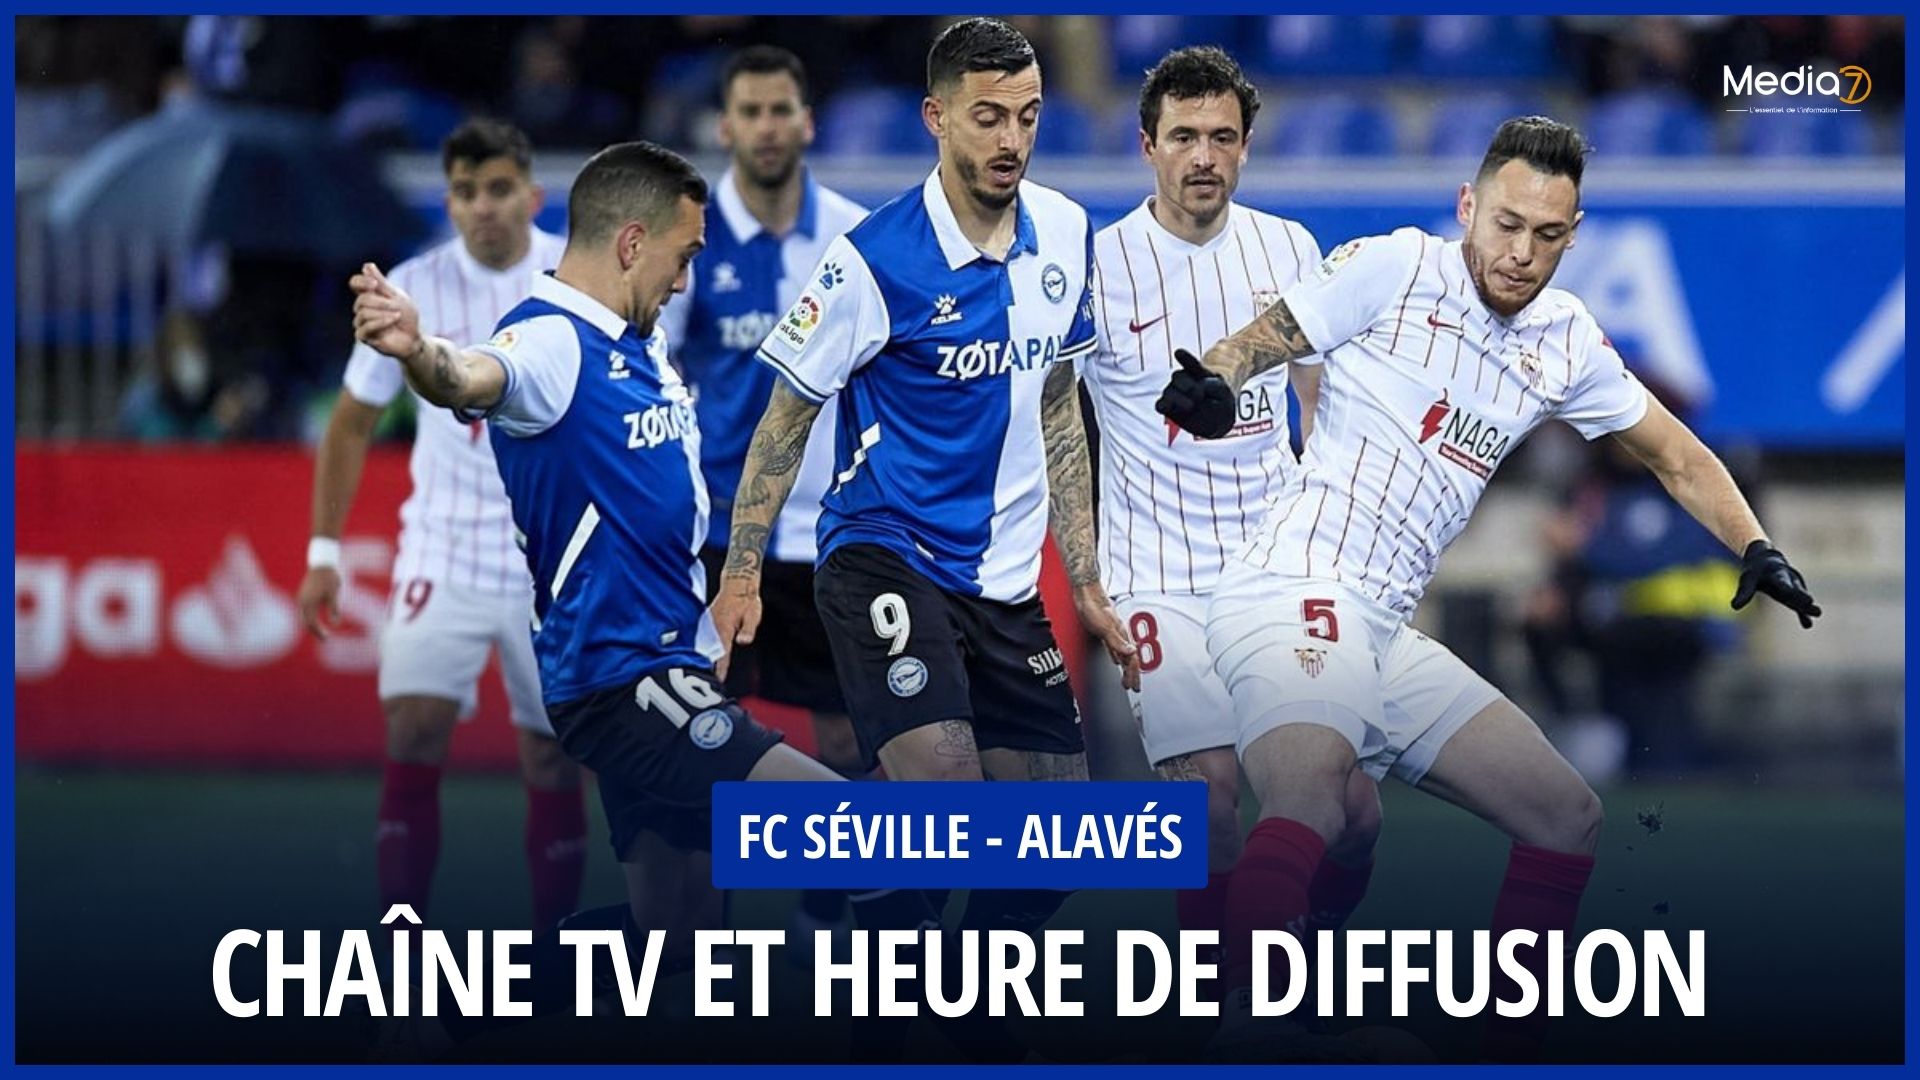 Sevilla FC - Alavés match live: TV channel and broadcast time - Media7